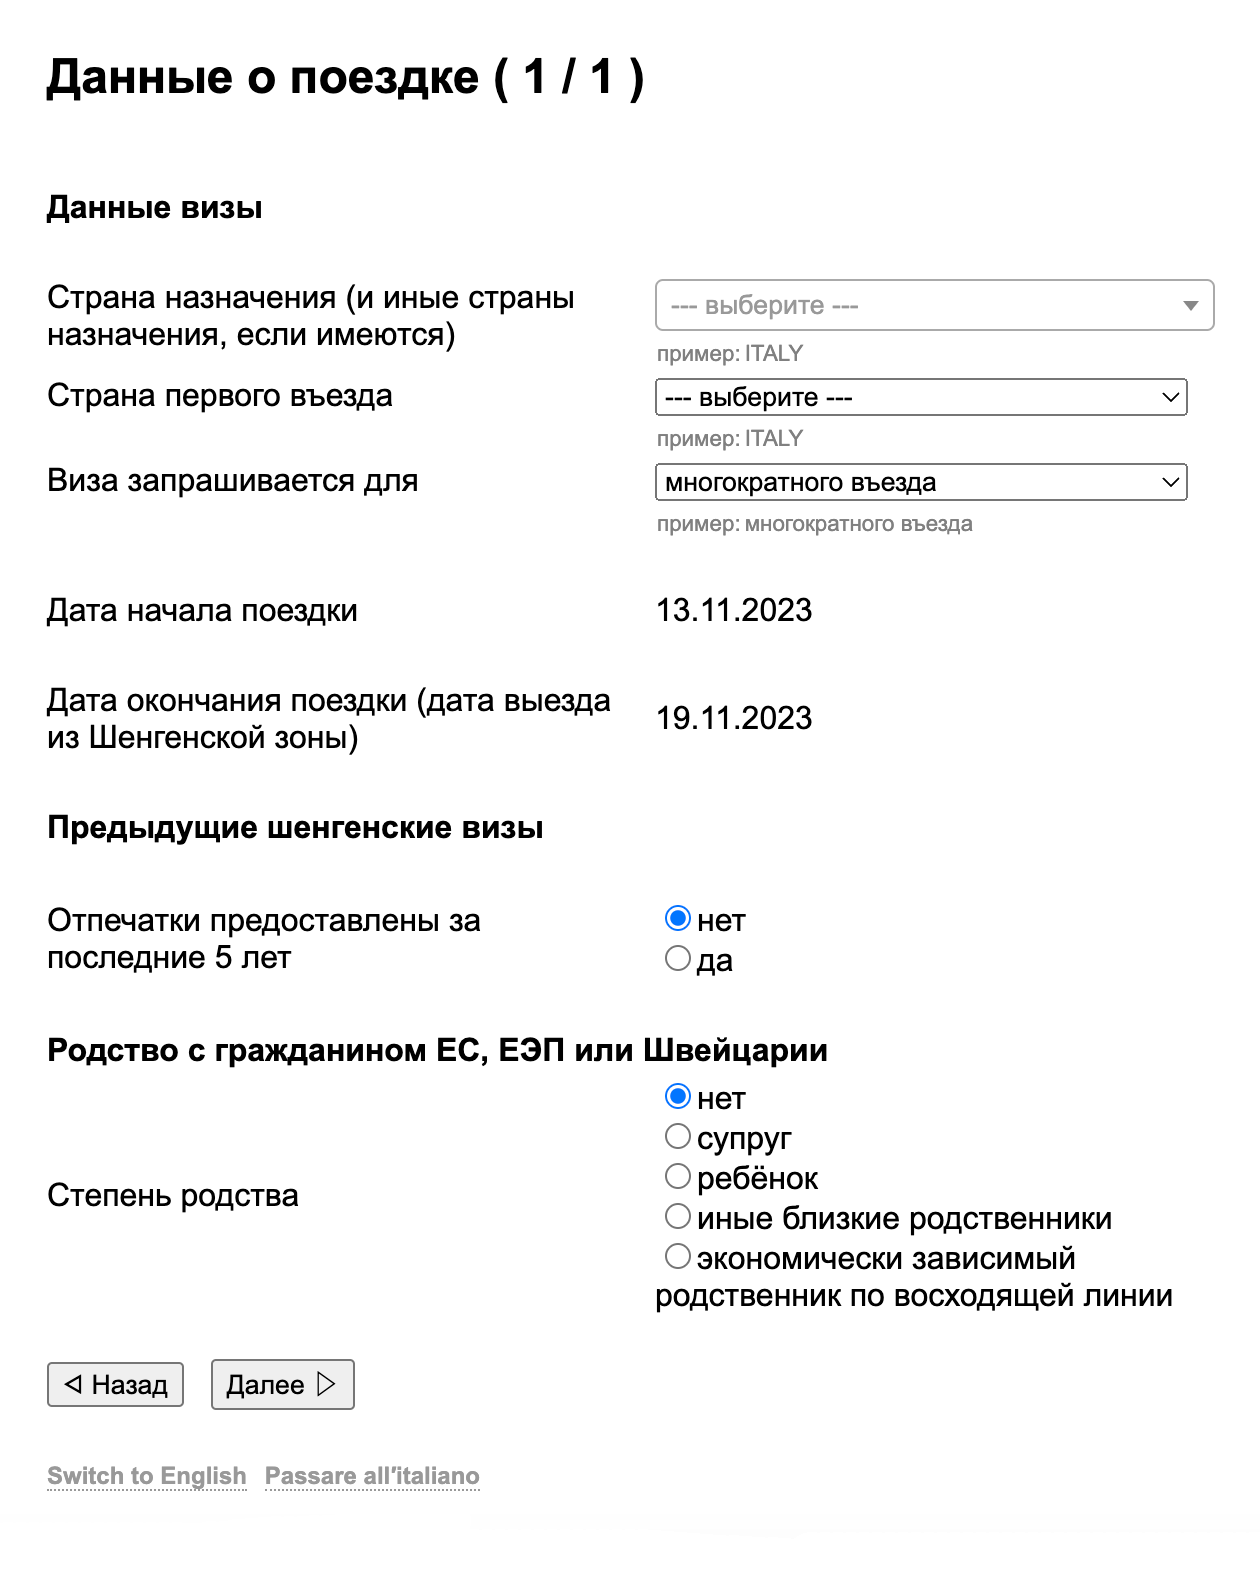 Даты поездки сайт ВЦ подставит автоматически, их указывают при создании анкеты. Источник: italy⁠-⁠vms.ru